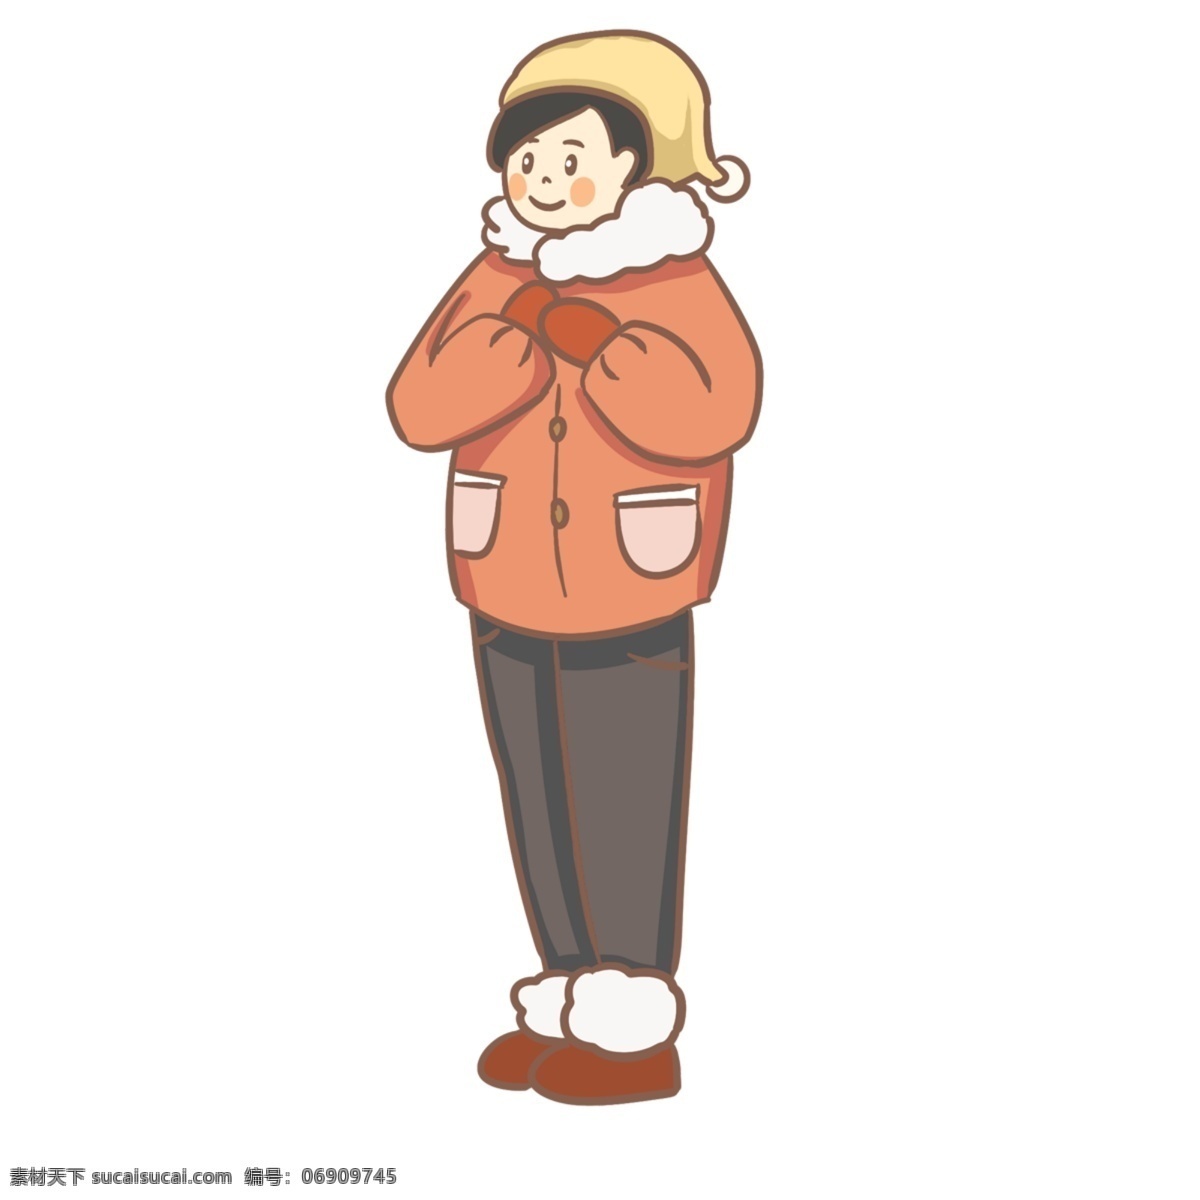 冬天 温暖 材料 插图 说明 图 卡通 韩国 风格